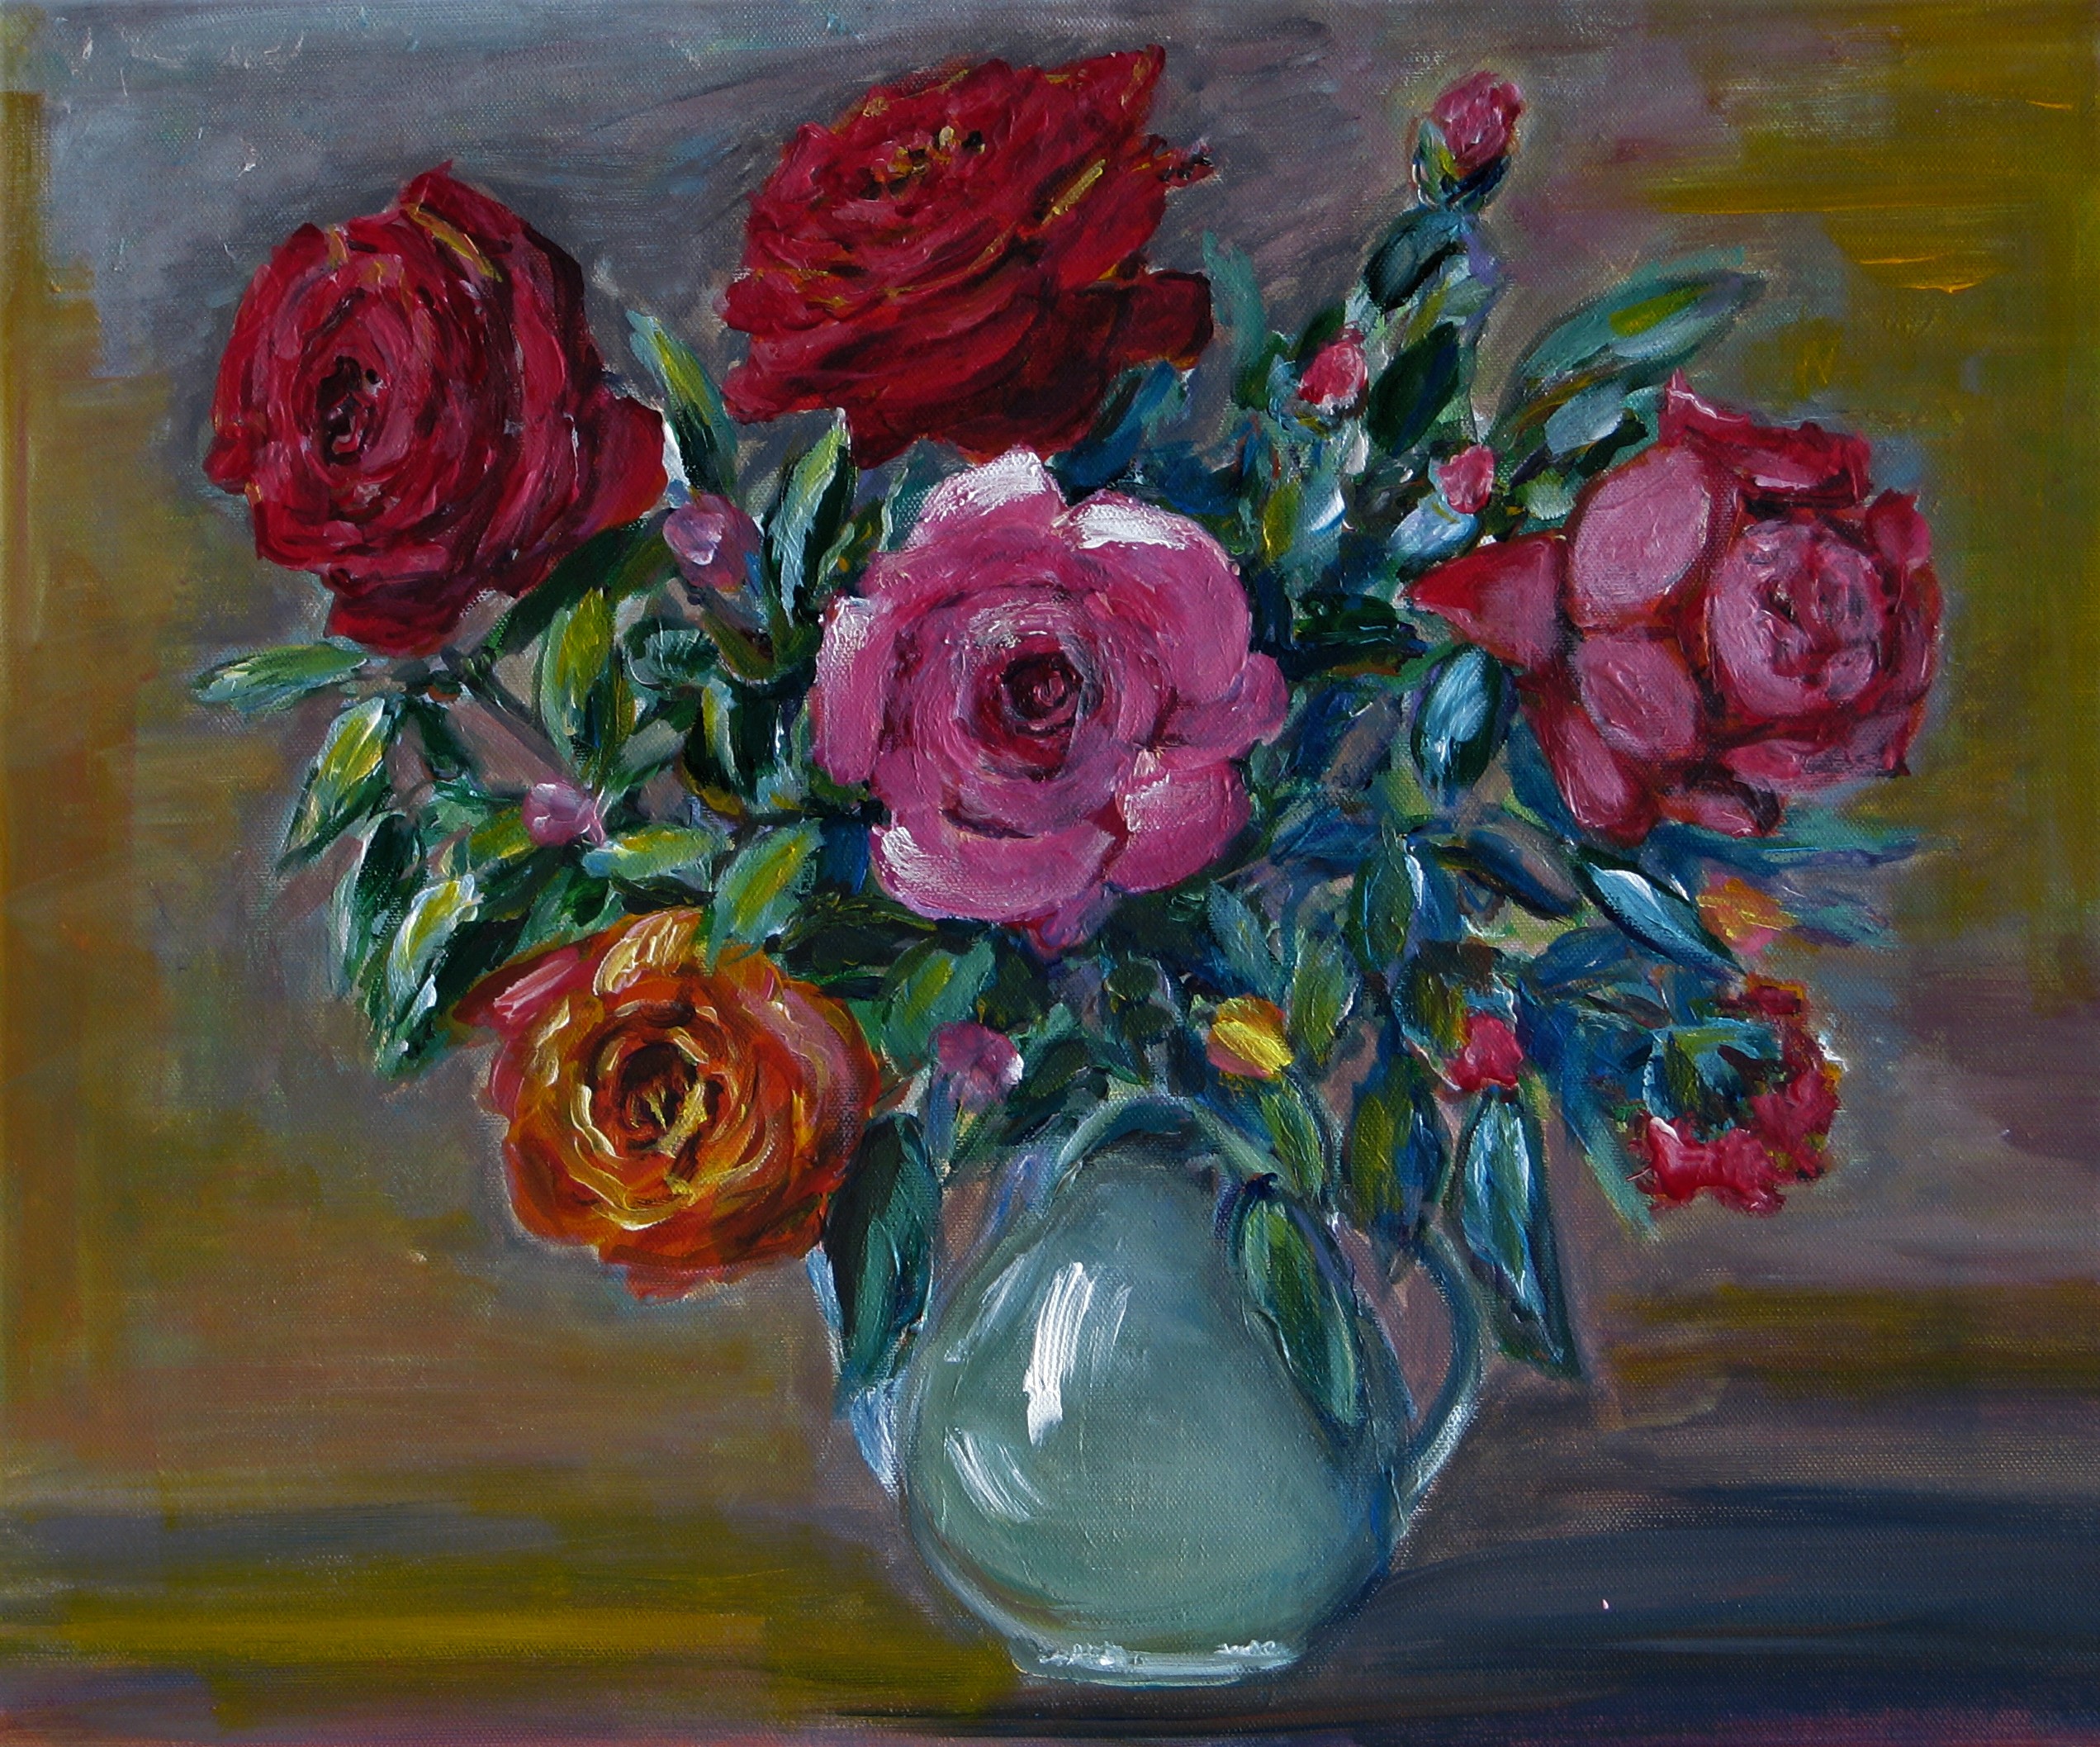 “Roses”, acrylic on canvas, 70 x 60 cm